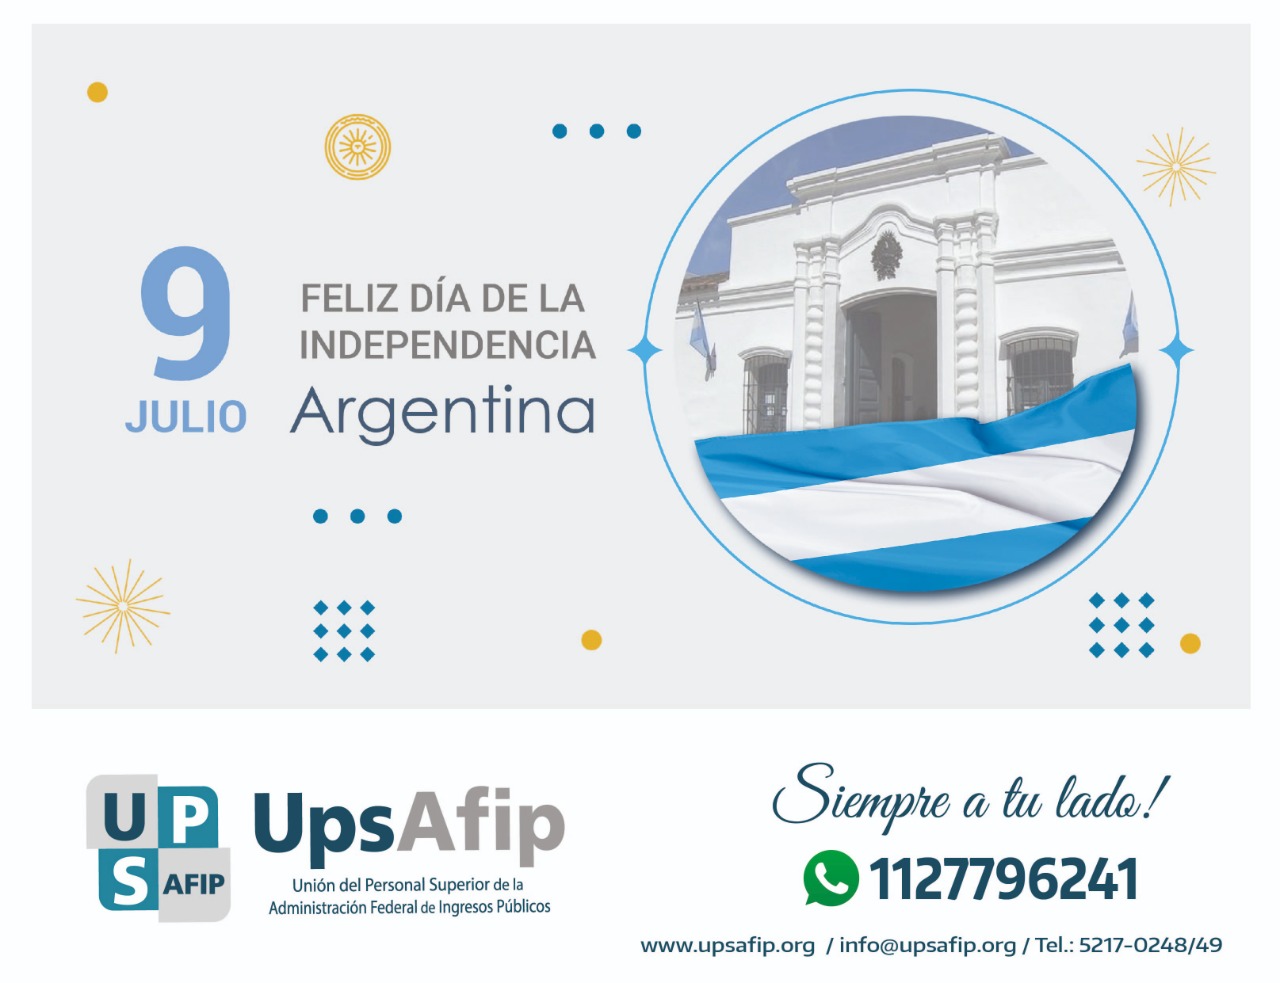 9 de Julio: Feliz Día de la Independencia Argentina